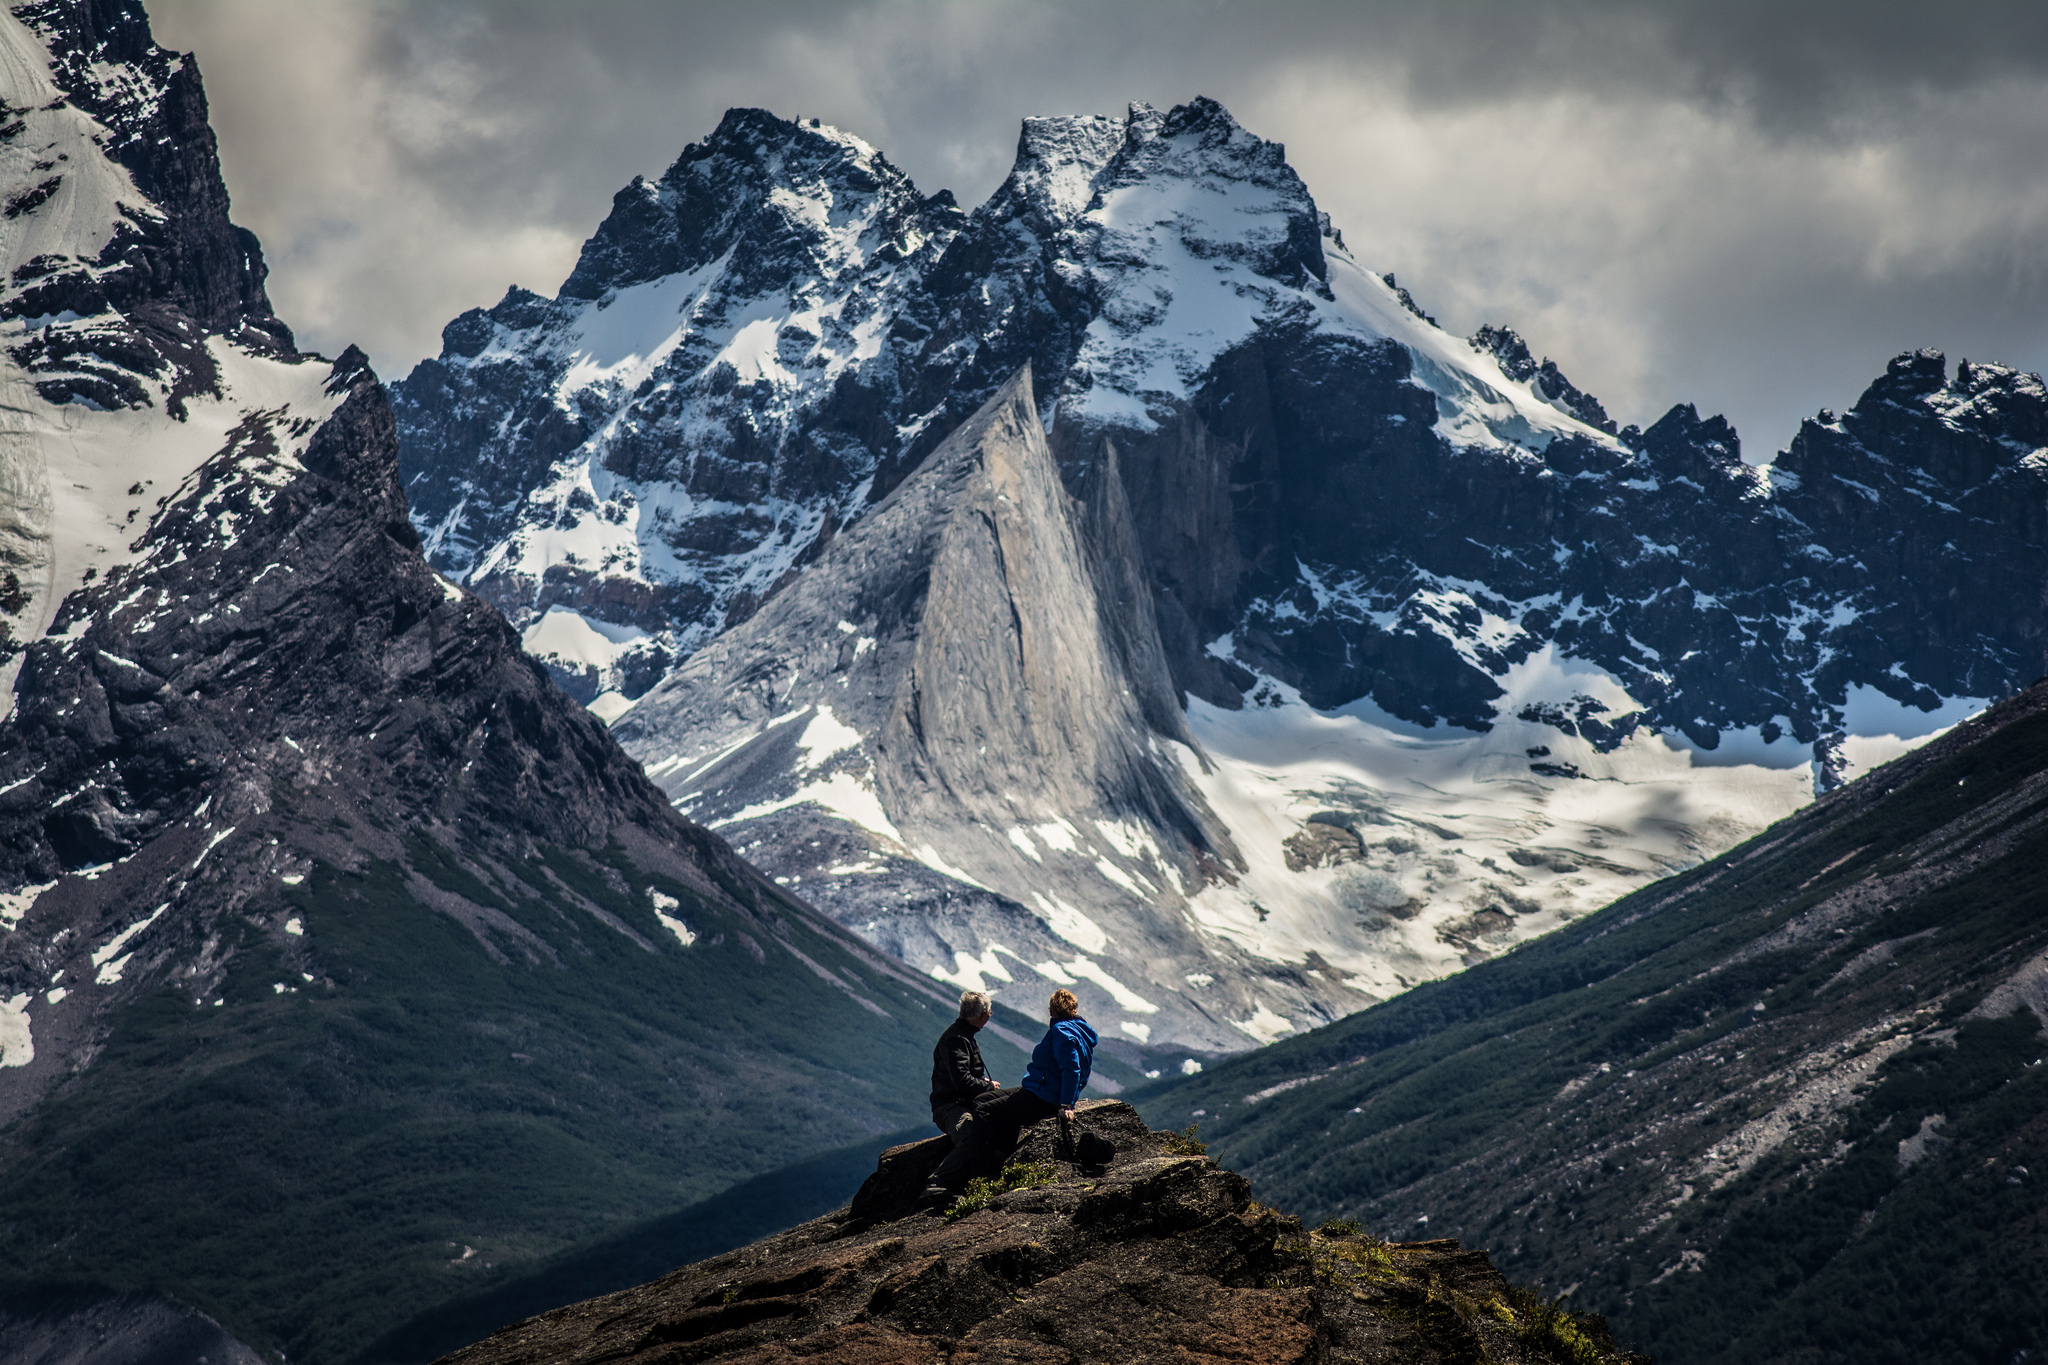 壯闊的冰川遺址美景讓百內國家公園成為南美最著名的健行去處。